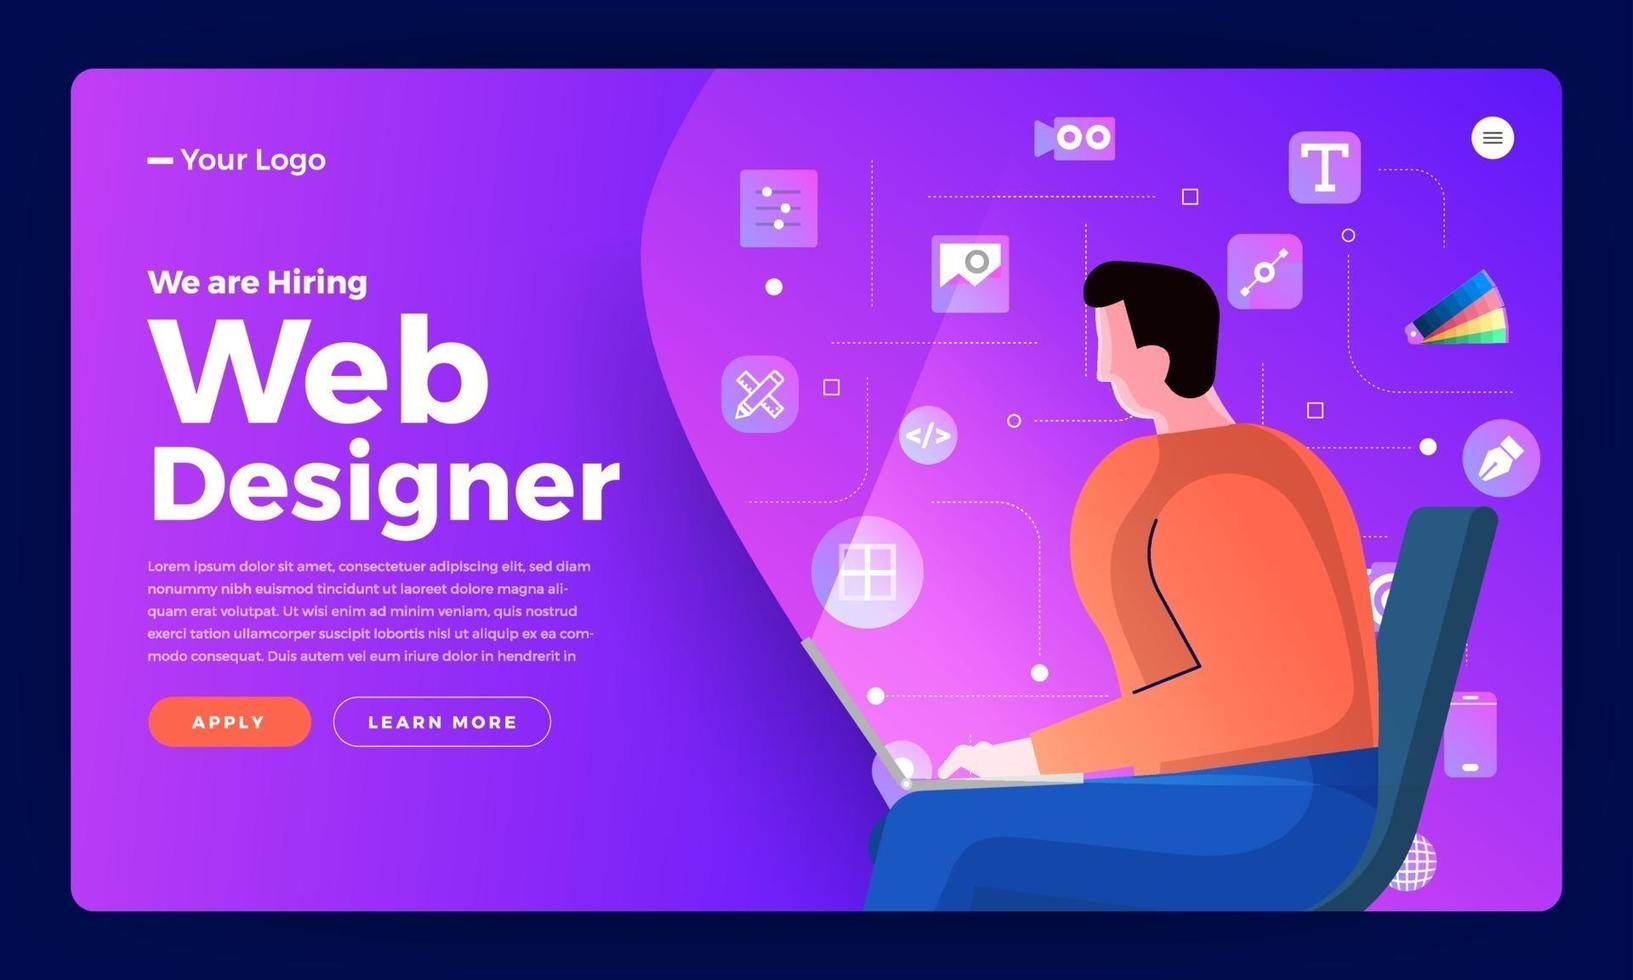 Zielseite für die Ankündigung von Webdesignern vektor